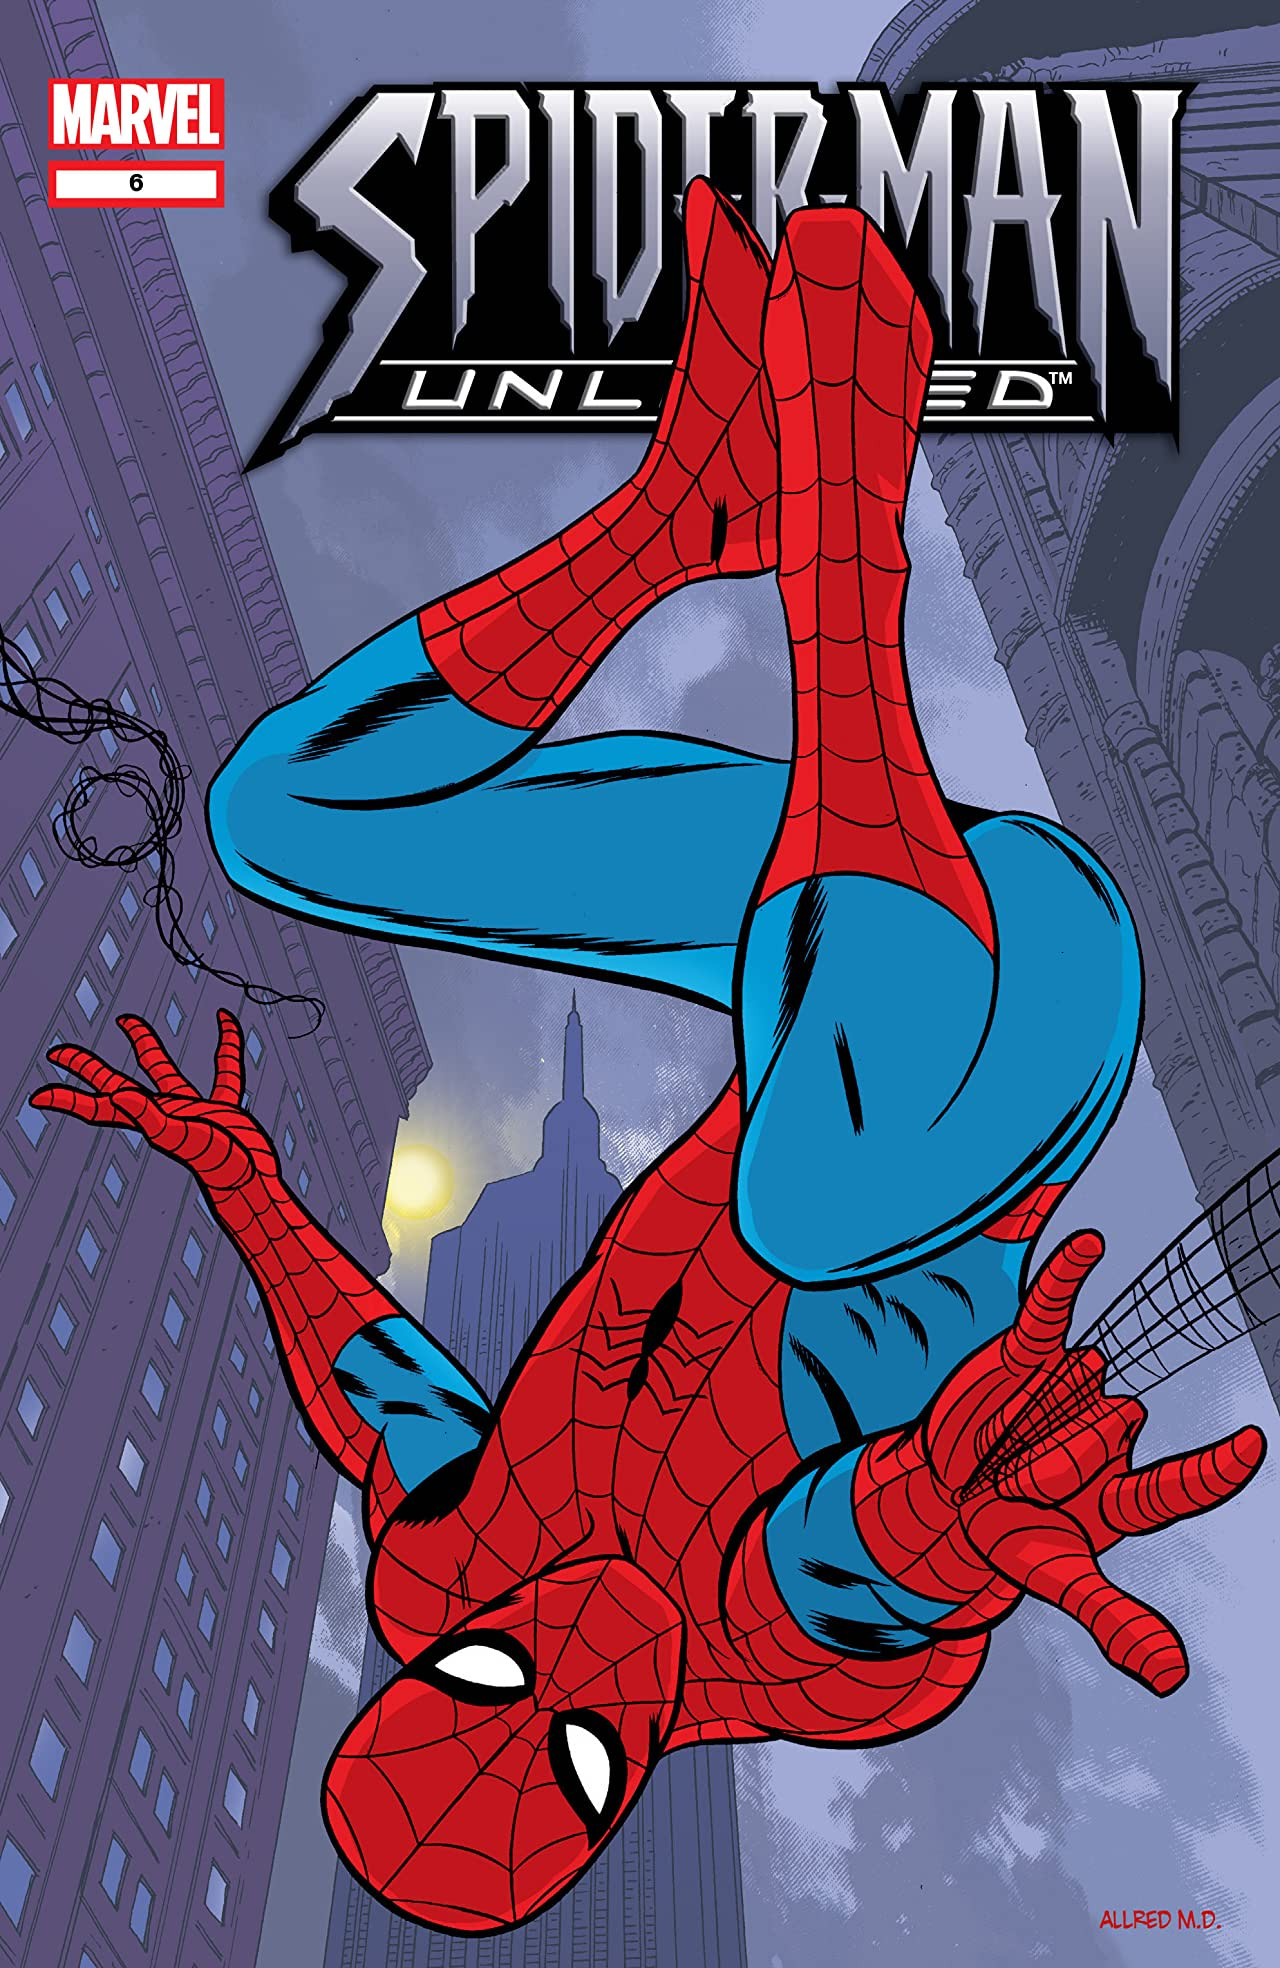 marvel spider man unlimited download